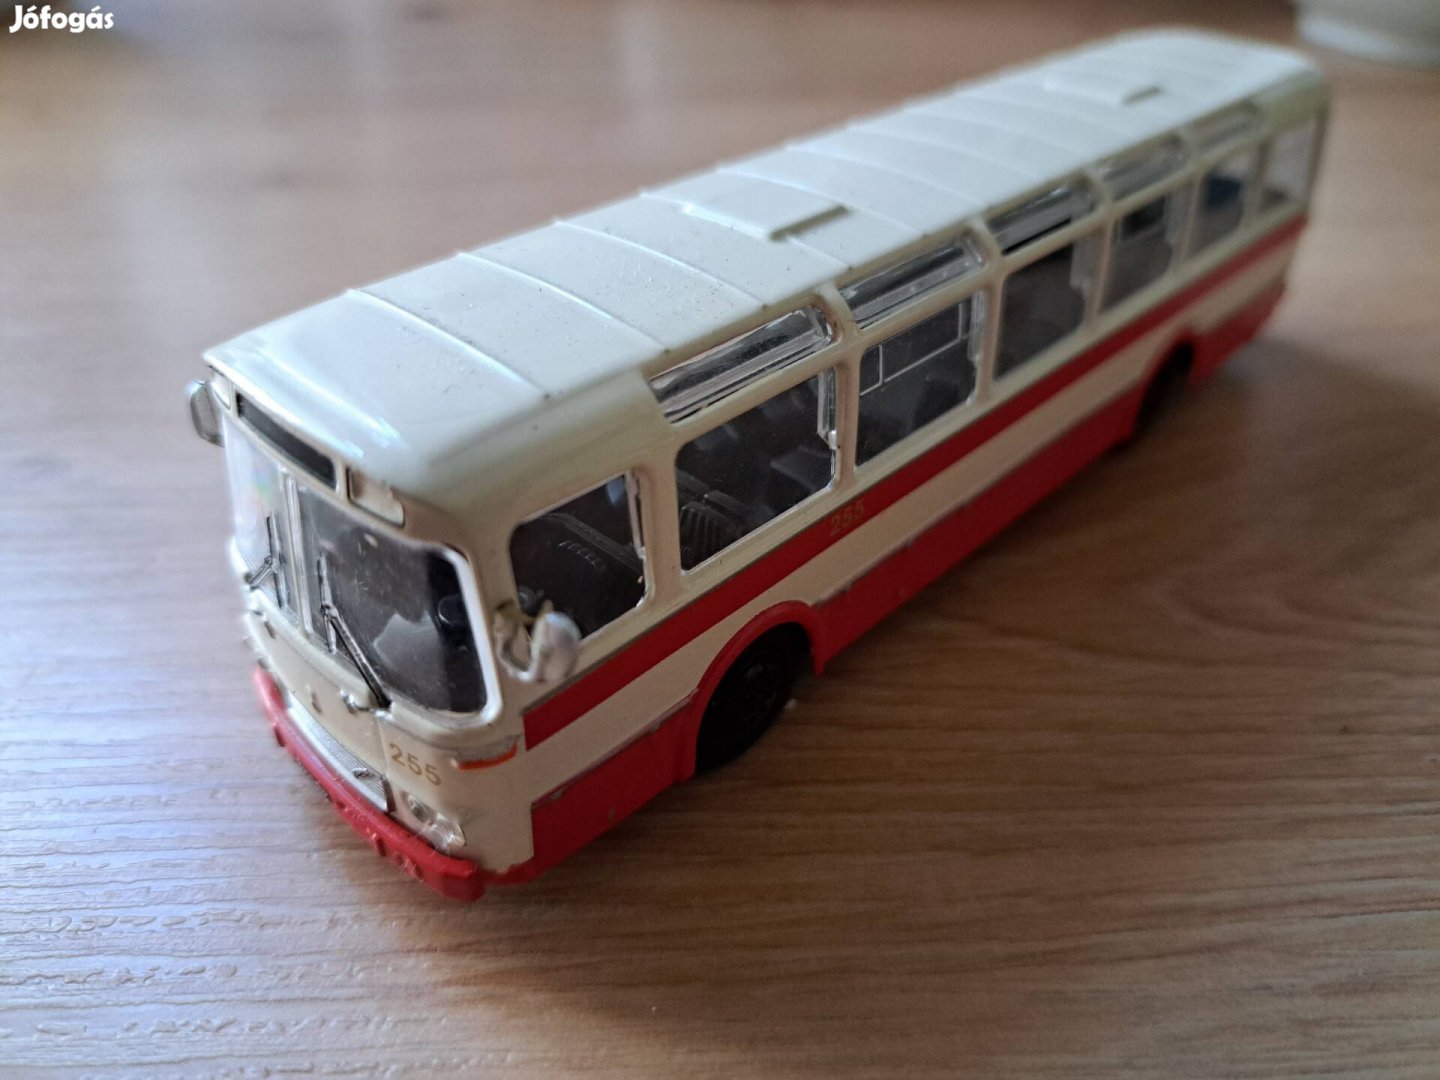 Eladó Skoda Karosa Sm11 autóbusz modell, 1/72-es méretarány